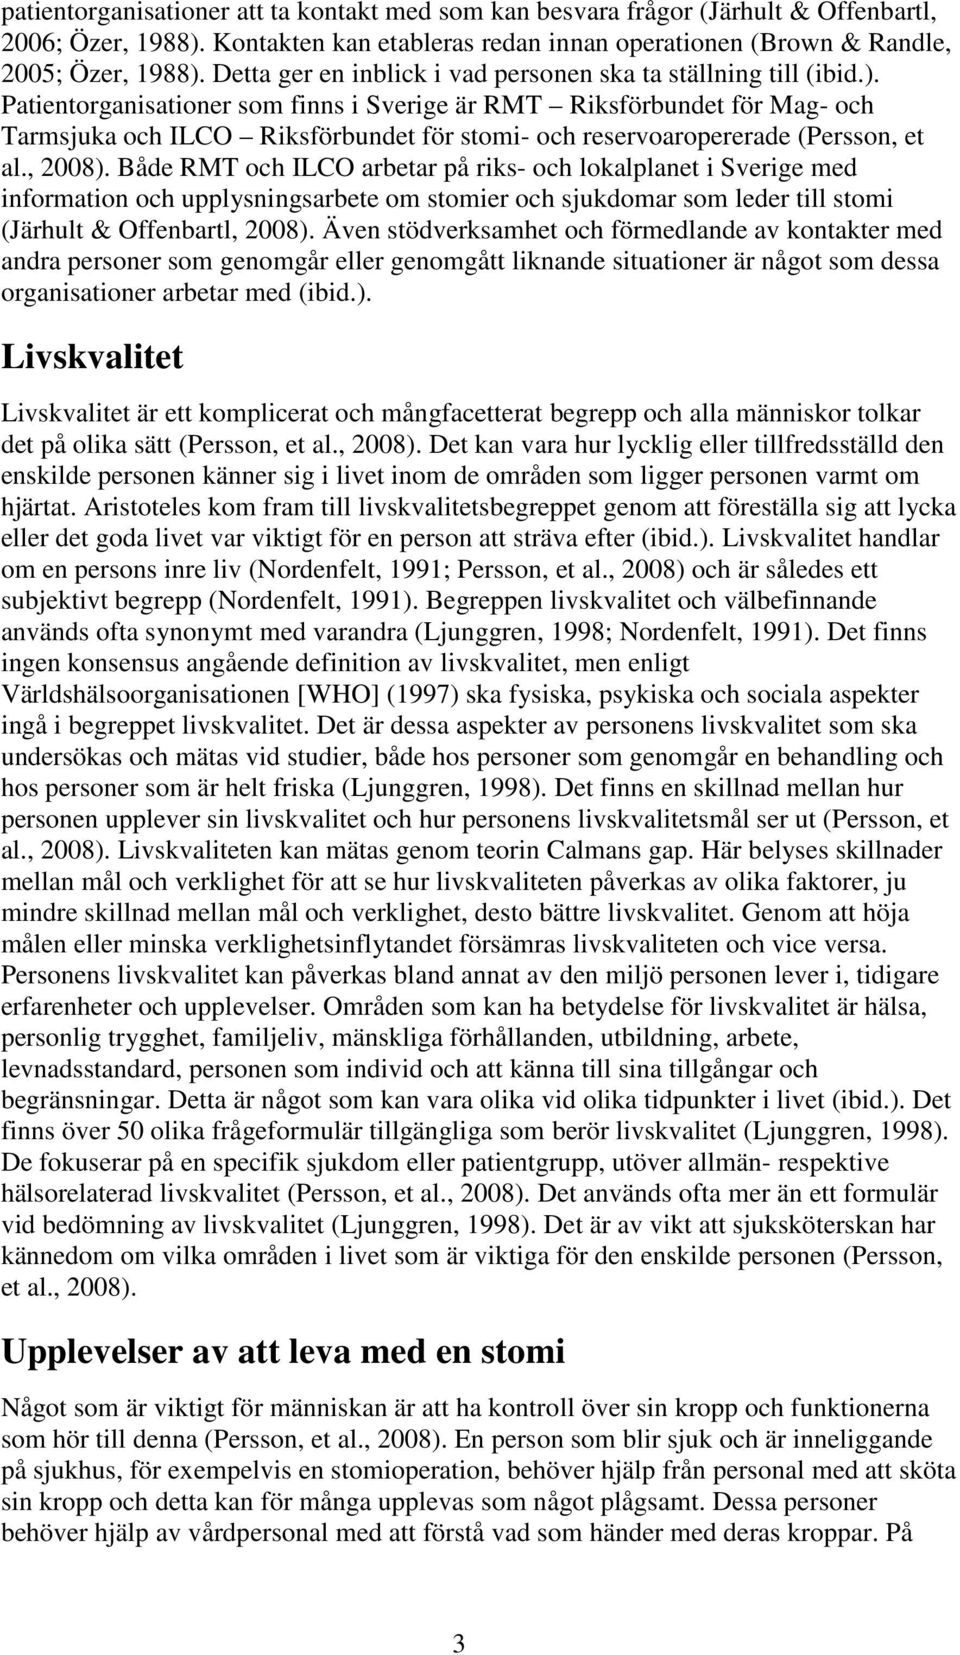 Patientorganisationer som finns i Sverige är RMT Riksförbundet för Mag- och Tarmsjuka och ILCO Riksförbundet för stomi- och reservoaropererade (Persson, et al., 2008).